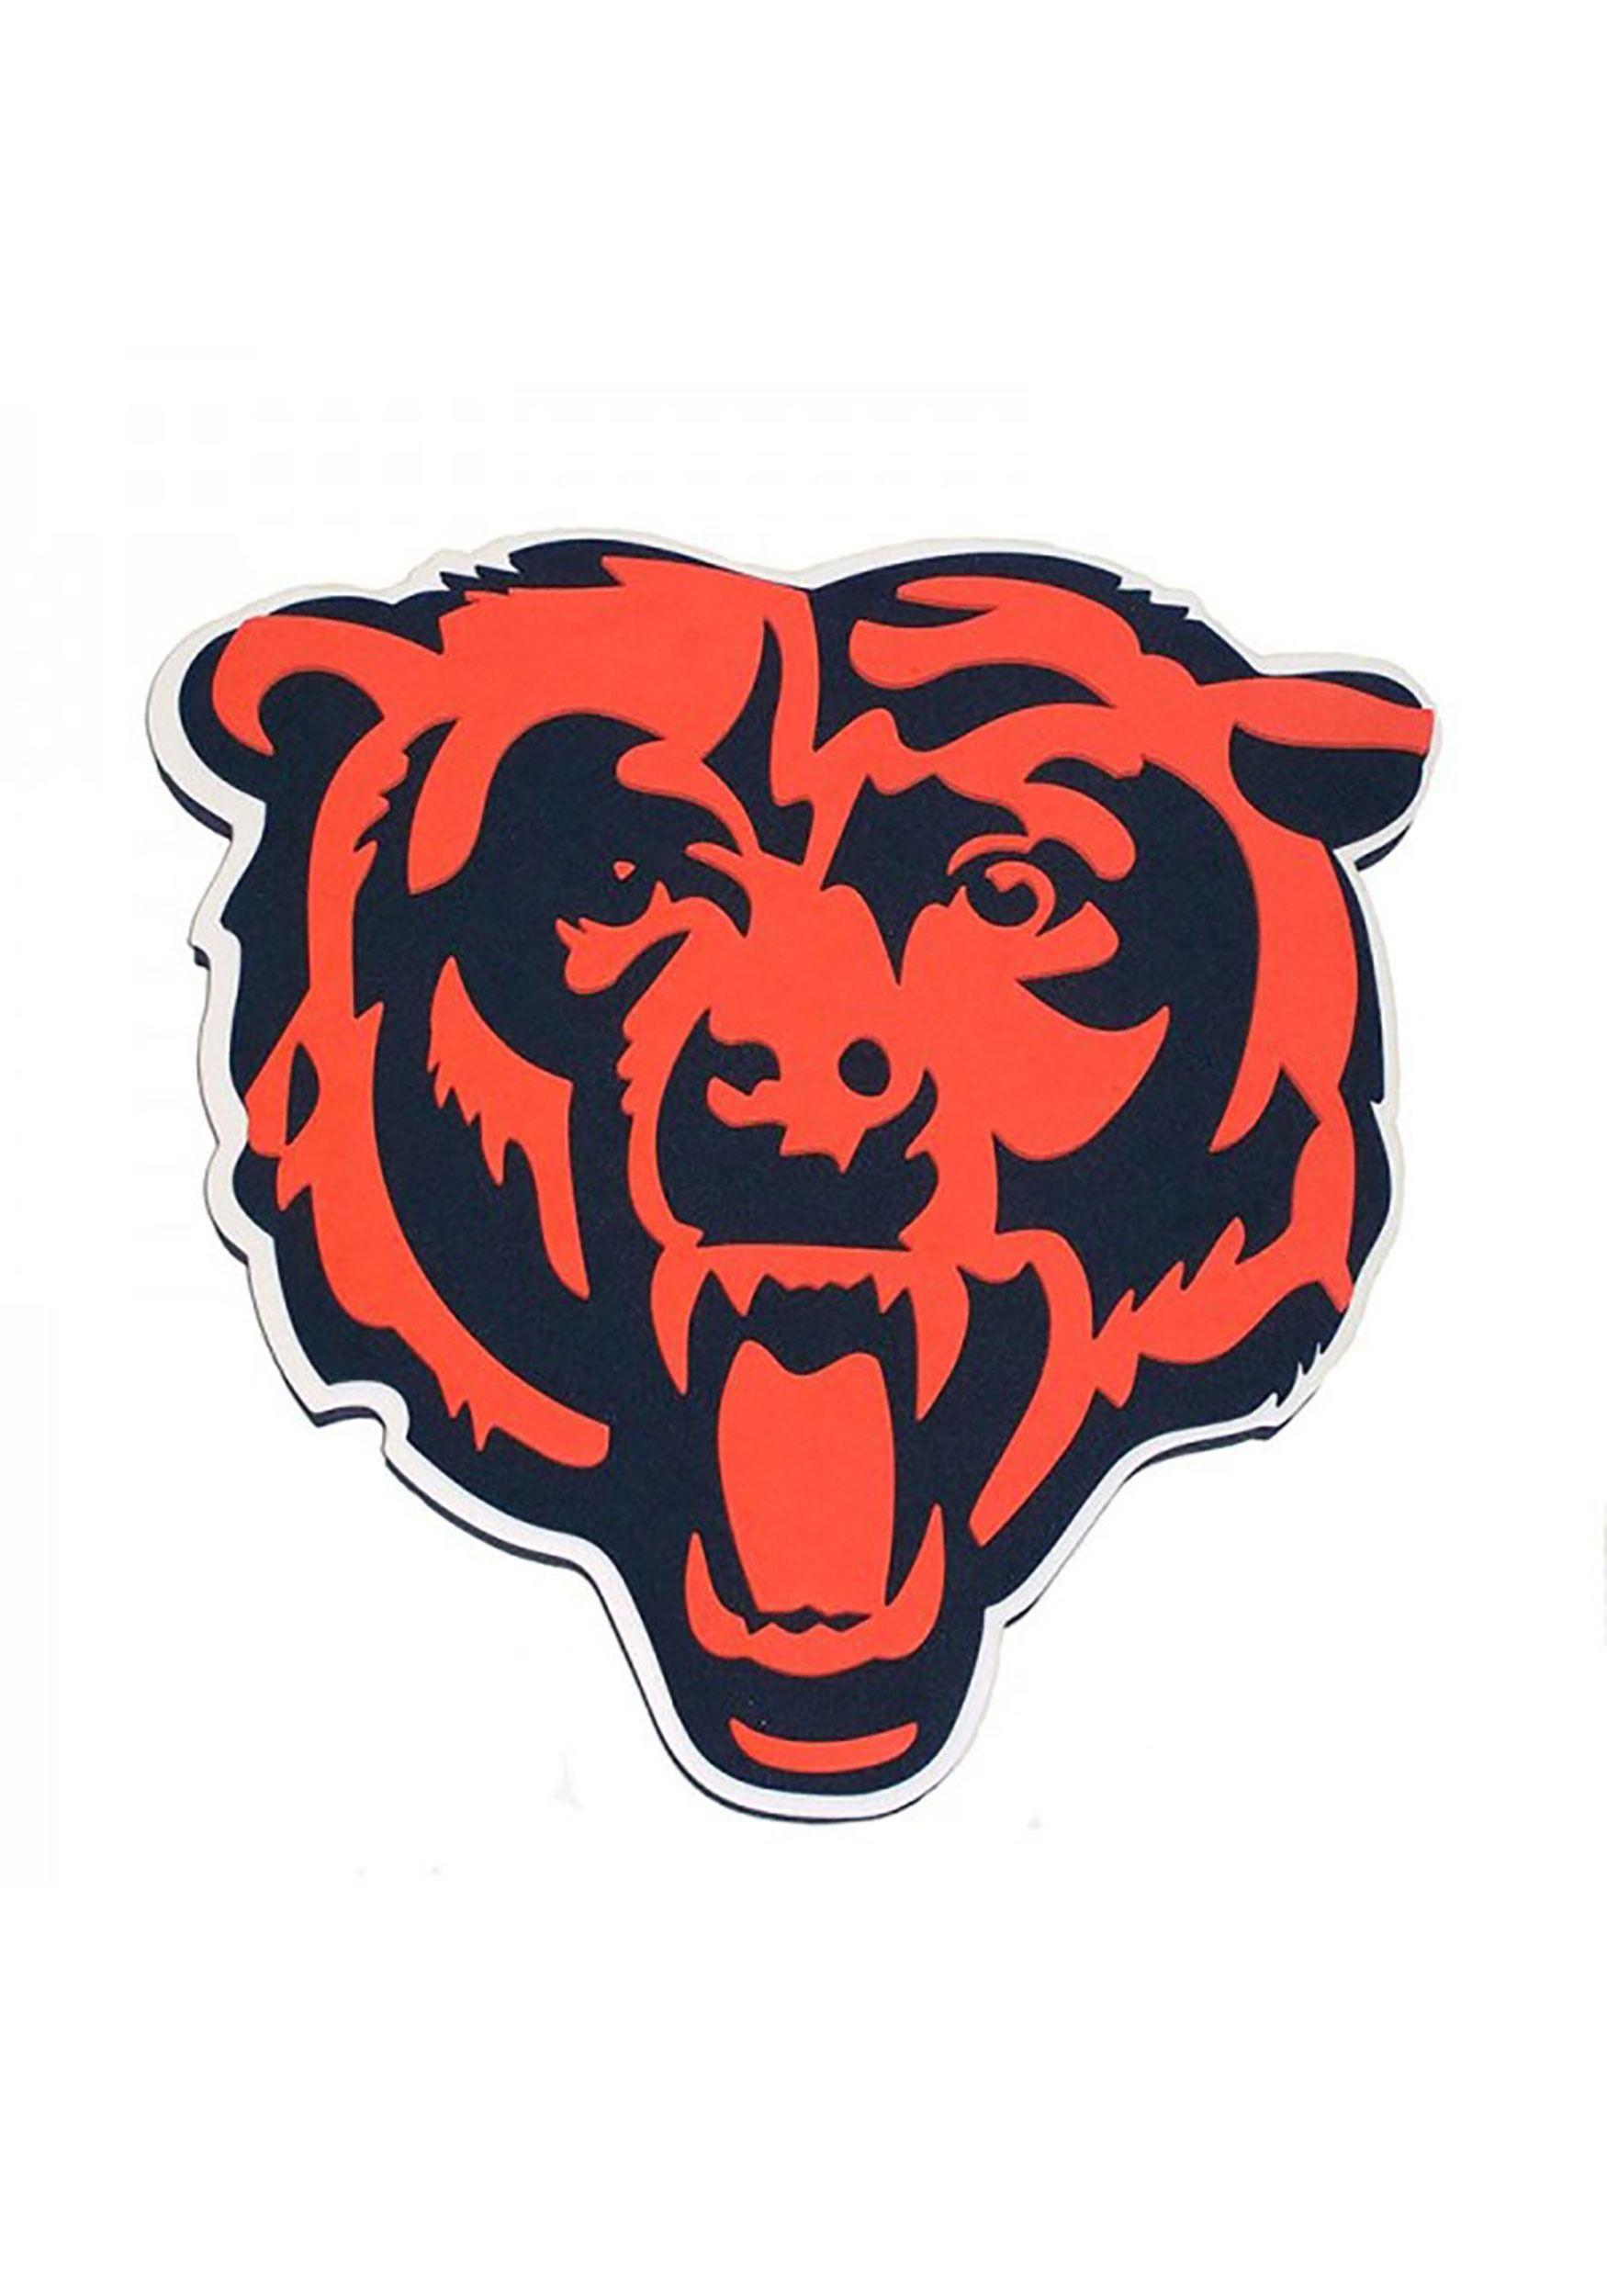 Chicago Bears Logo - Chicago Bears NFL Logo Foam Sign